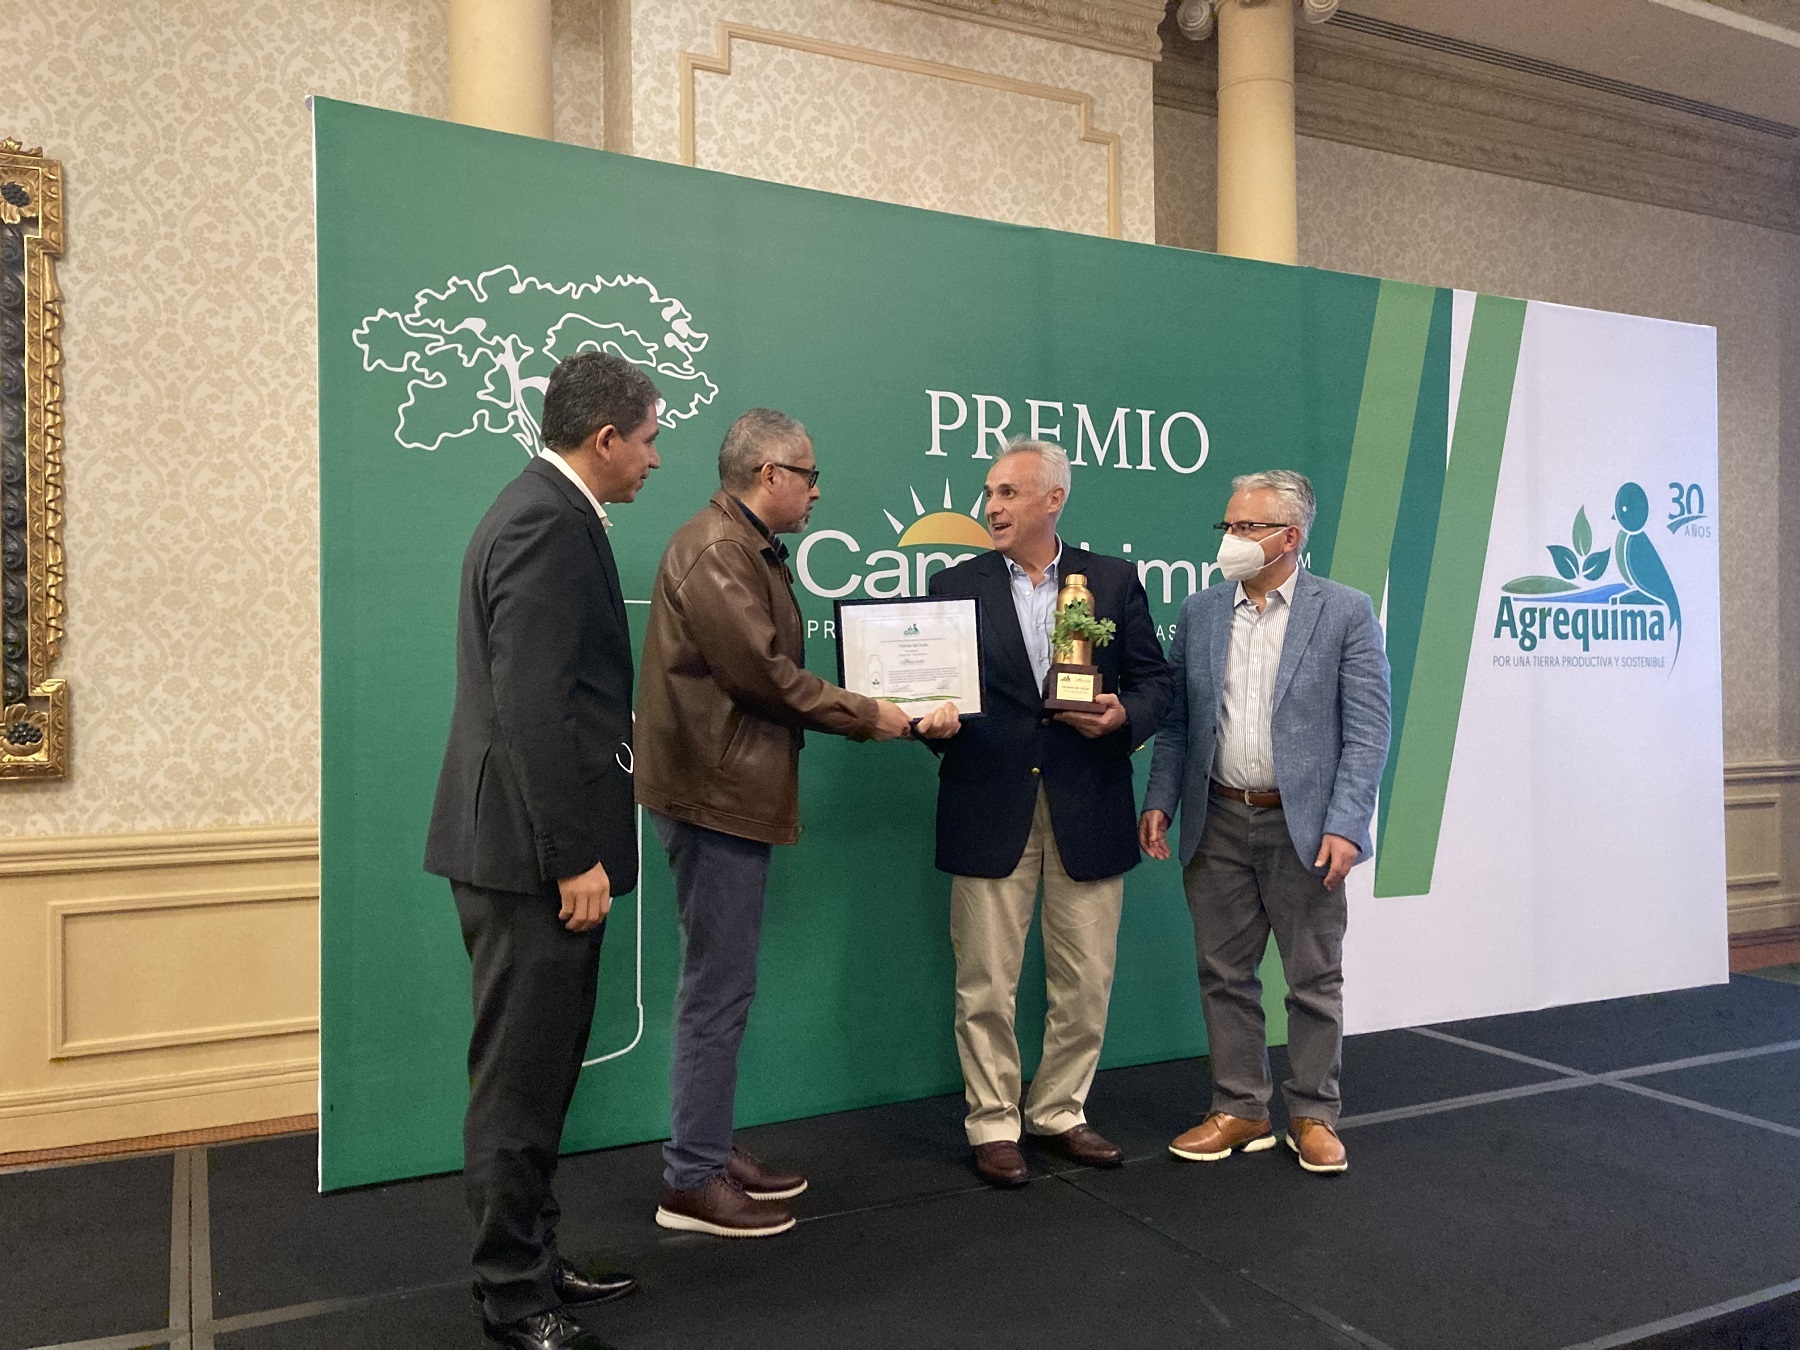 Palmas del Ixcán, es el ganador del Premio CampoLimpio 2021-2022 y Agrequima comparte su Primer Reporte de Sostenibilidad bajo el estándar GRI, “Por una Tierra Productiva y Sostenible”